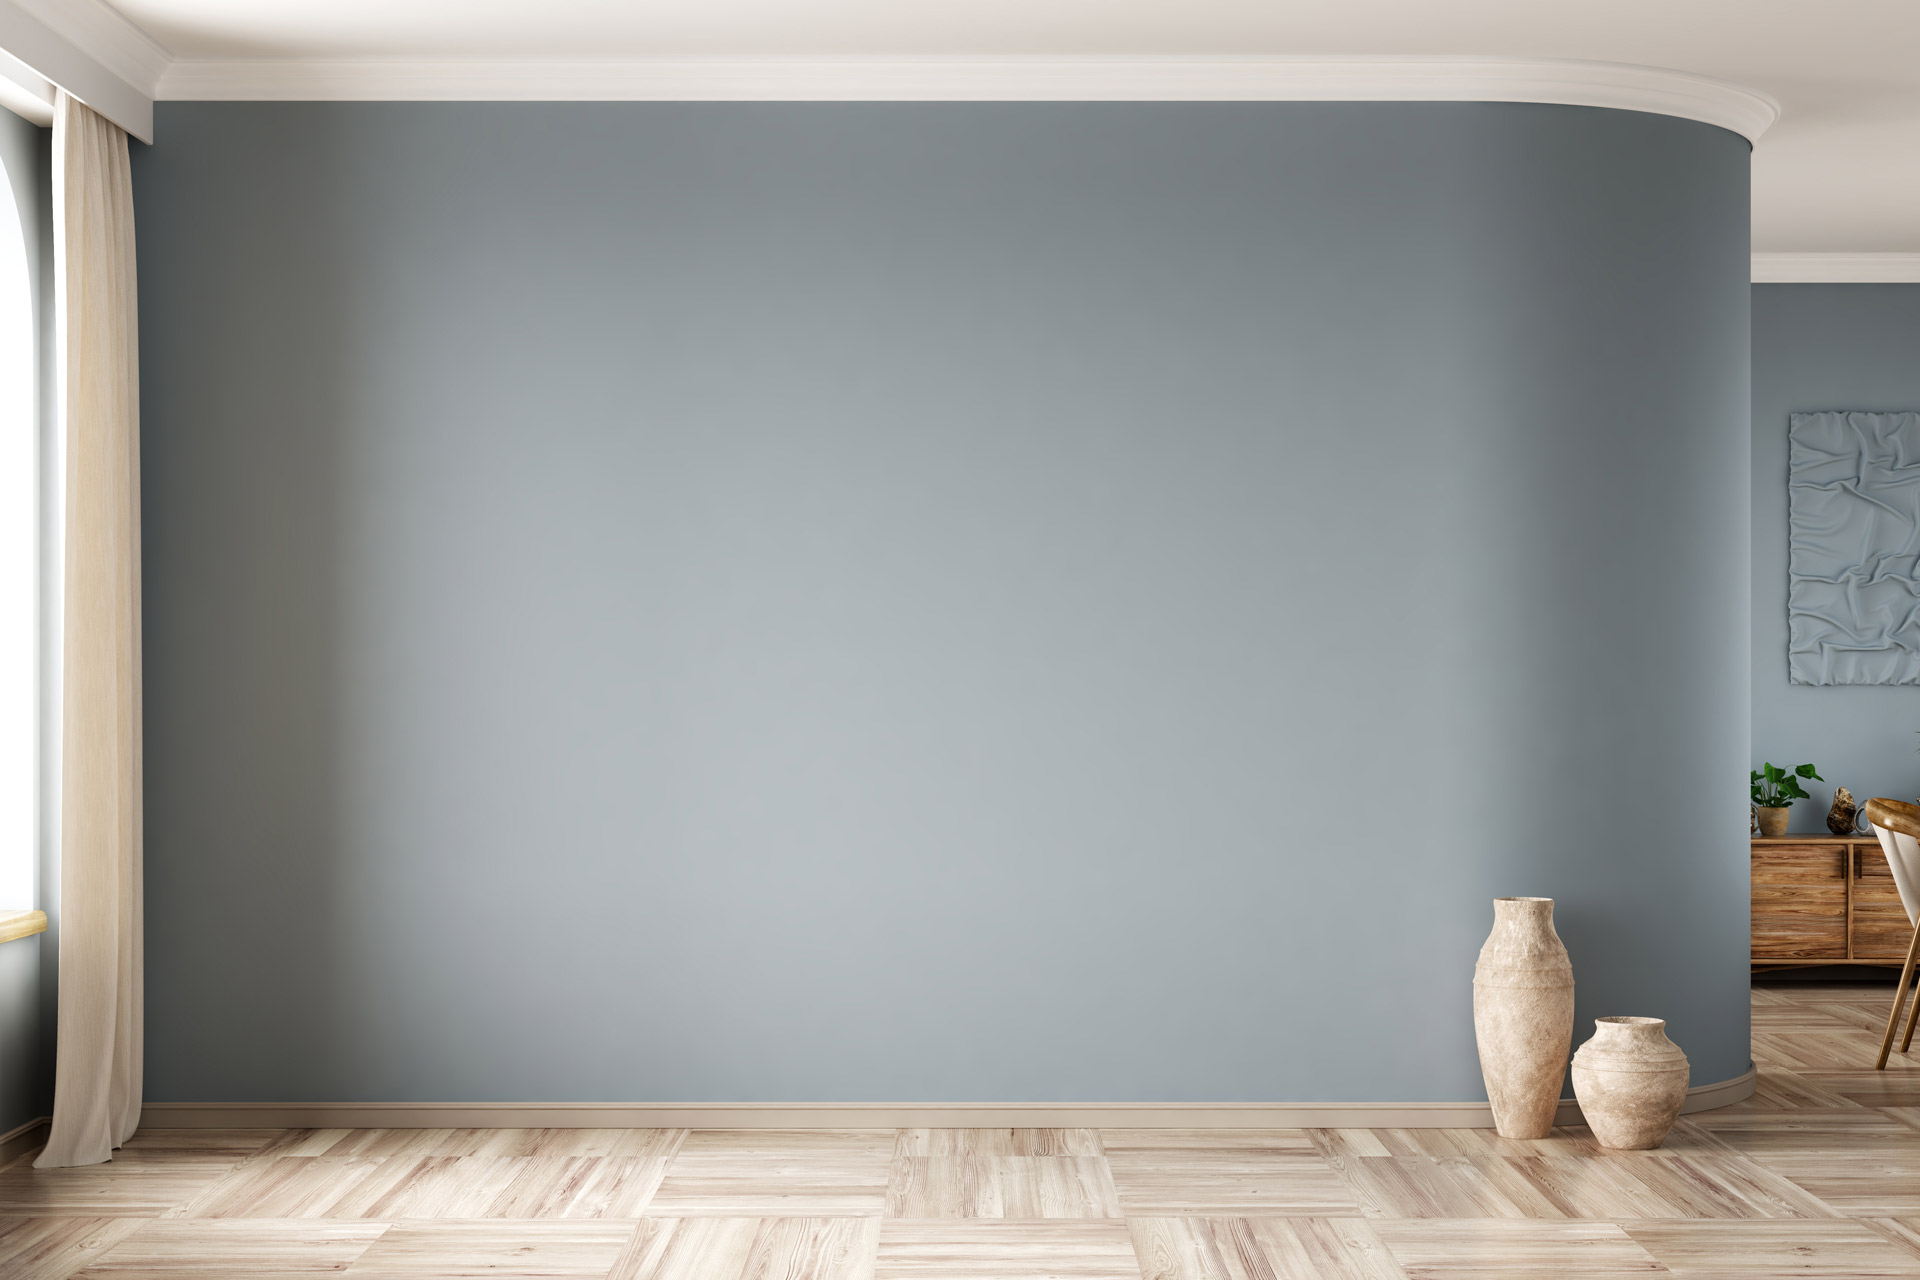 Farbgestaltung Ihrer Wohnung von Ihrem Maler Weilacher aus Rosenheim